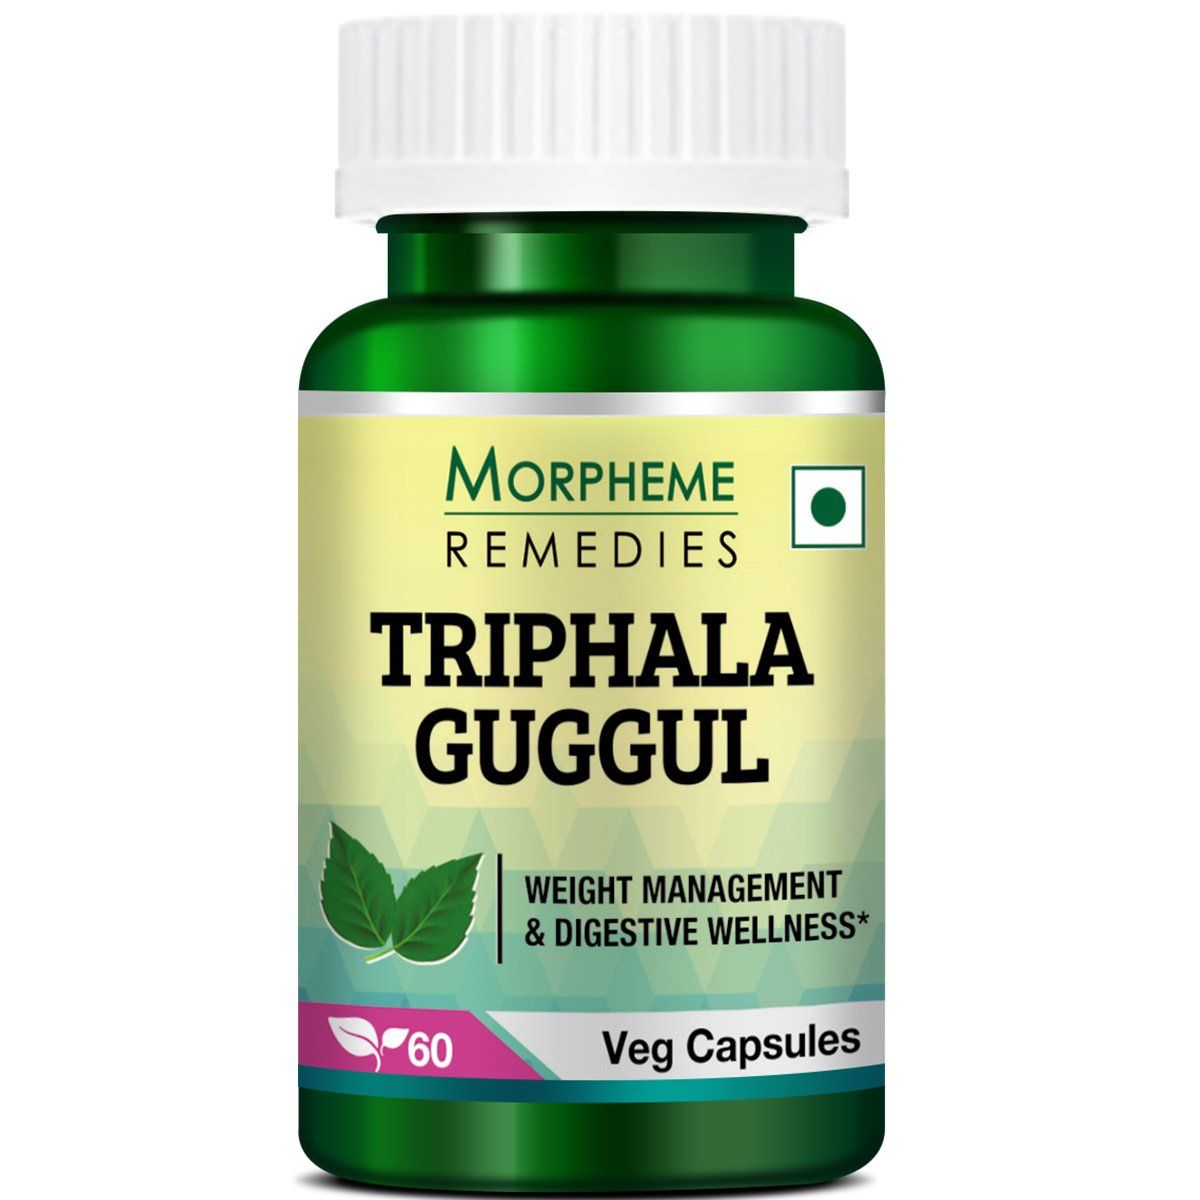 Morpheme Remedies Triphala Guggul Image